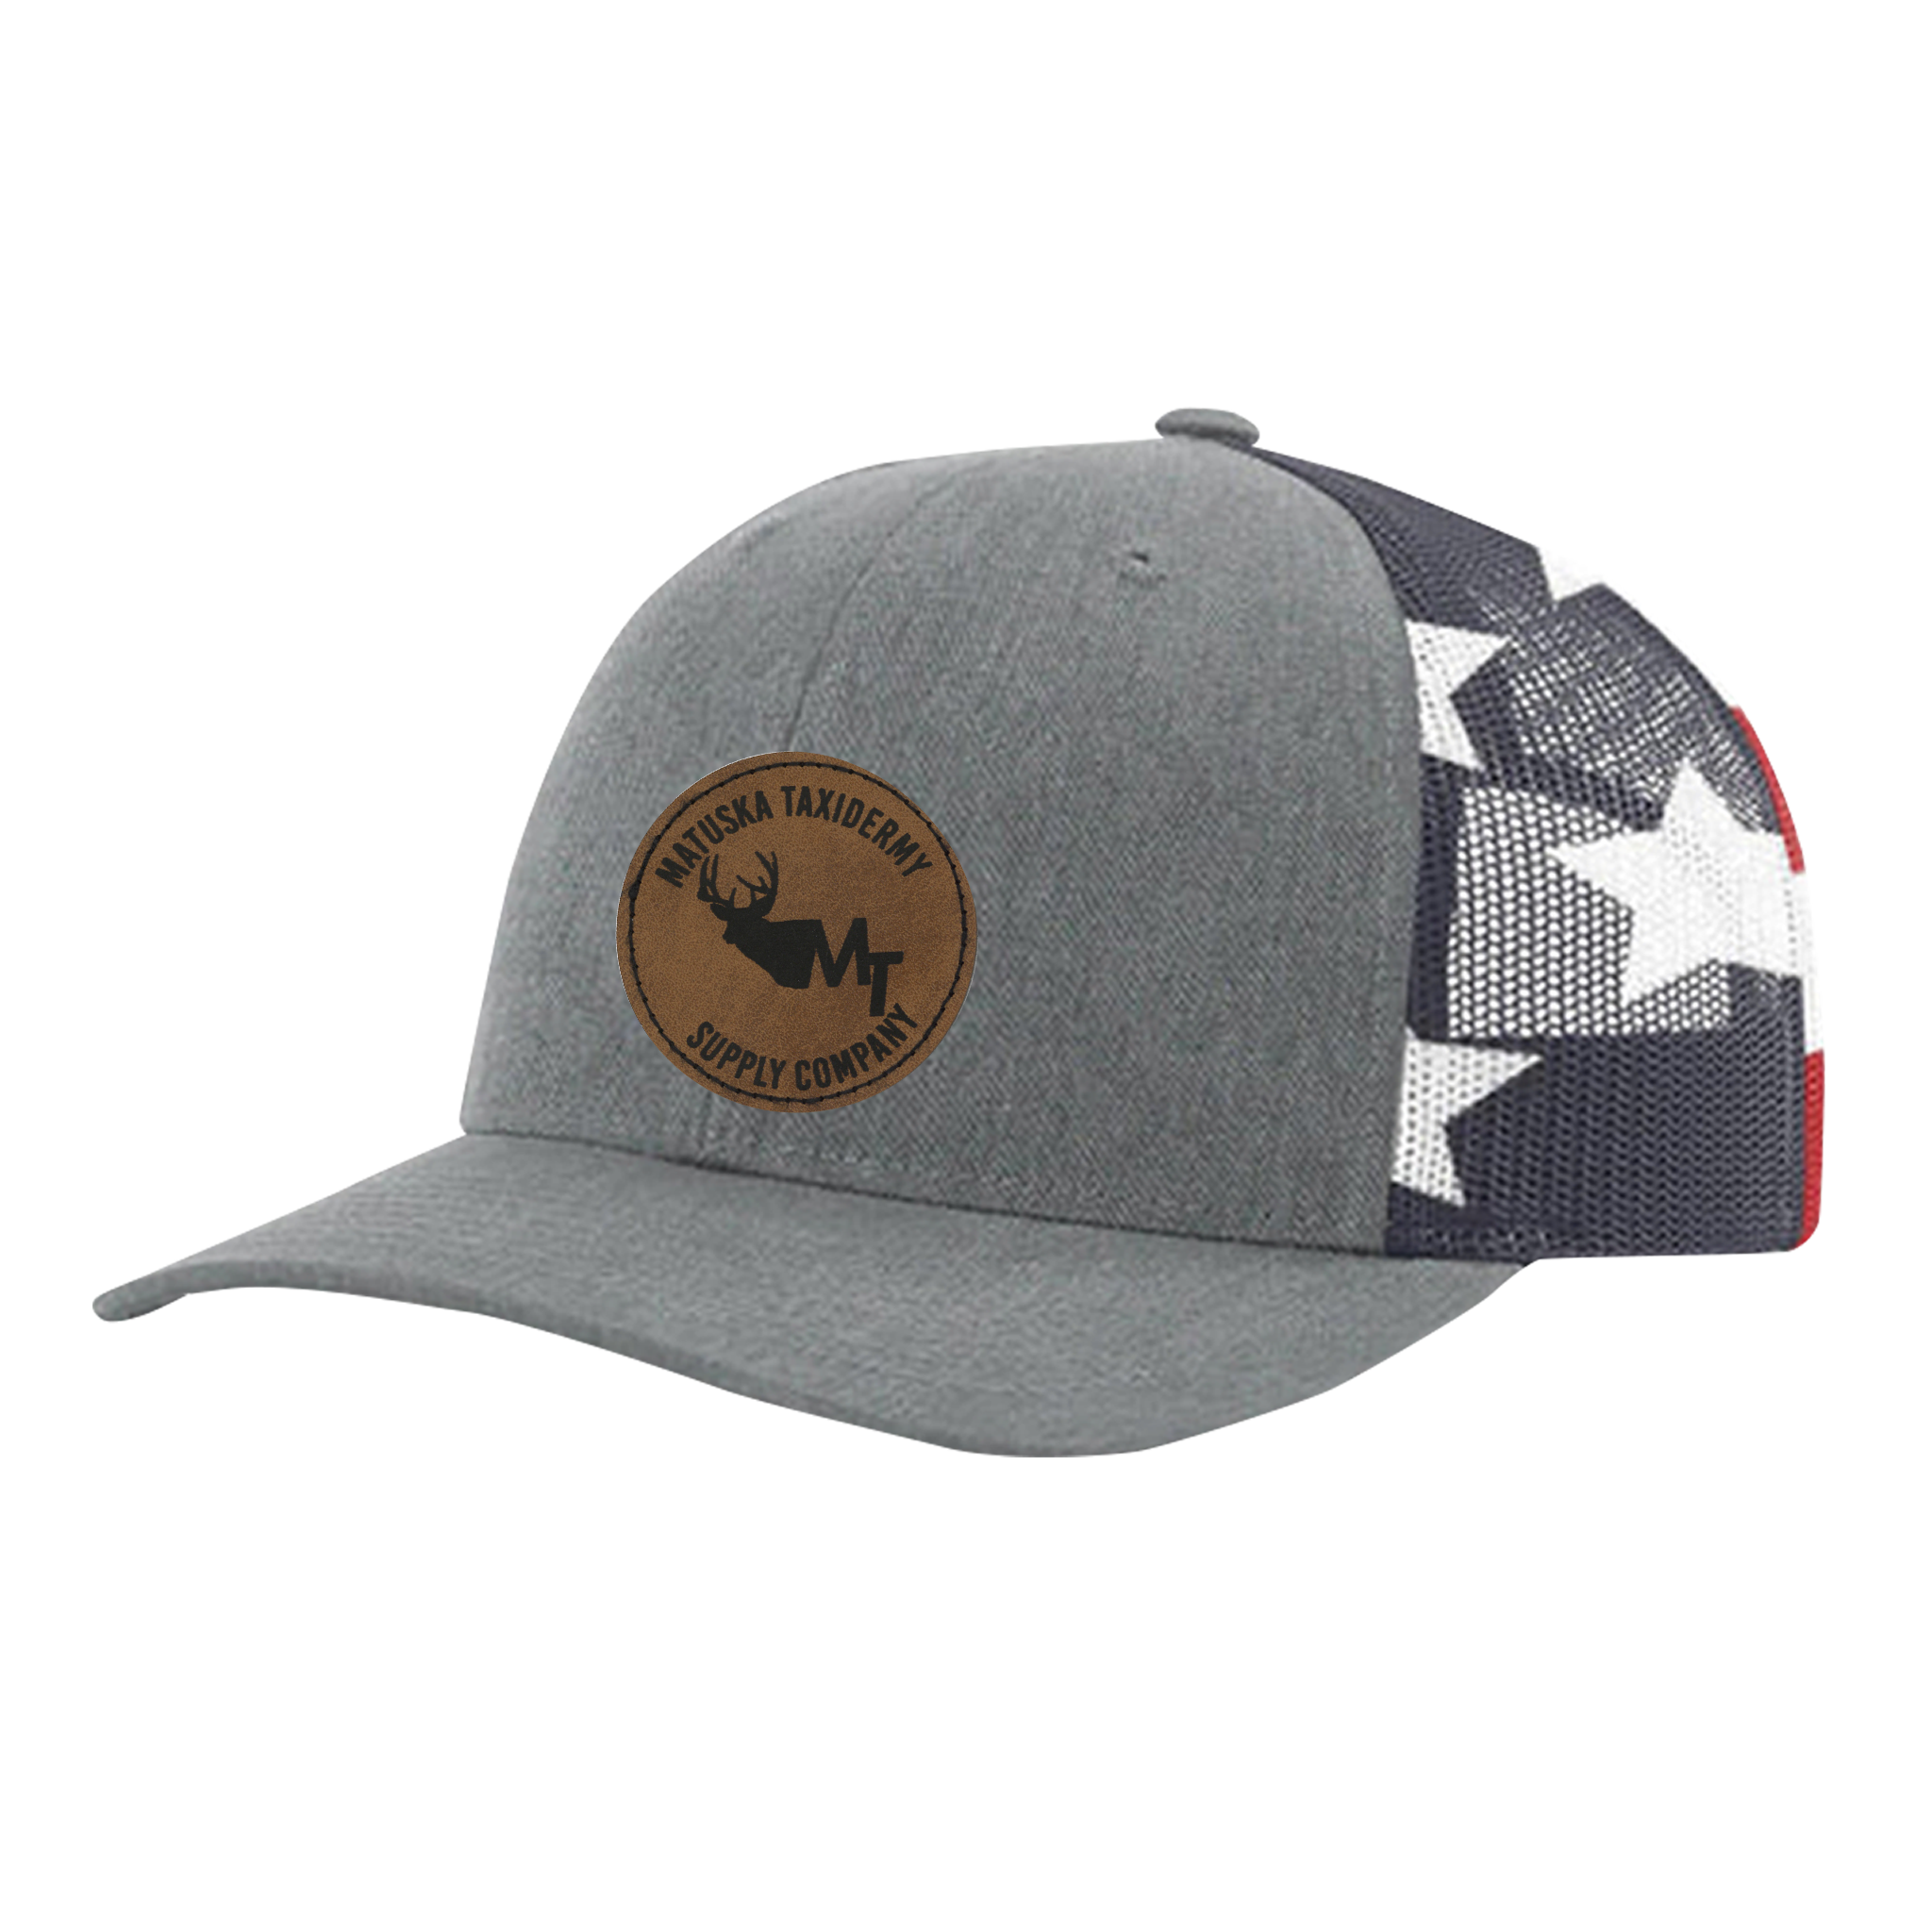 Adjustable Trucker Hat - Gray/Flag (Deer Patch)